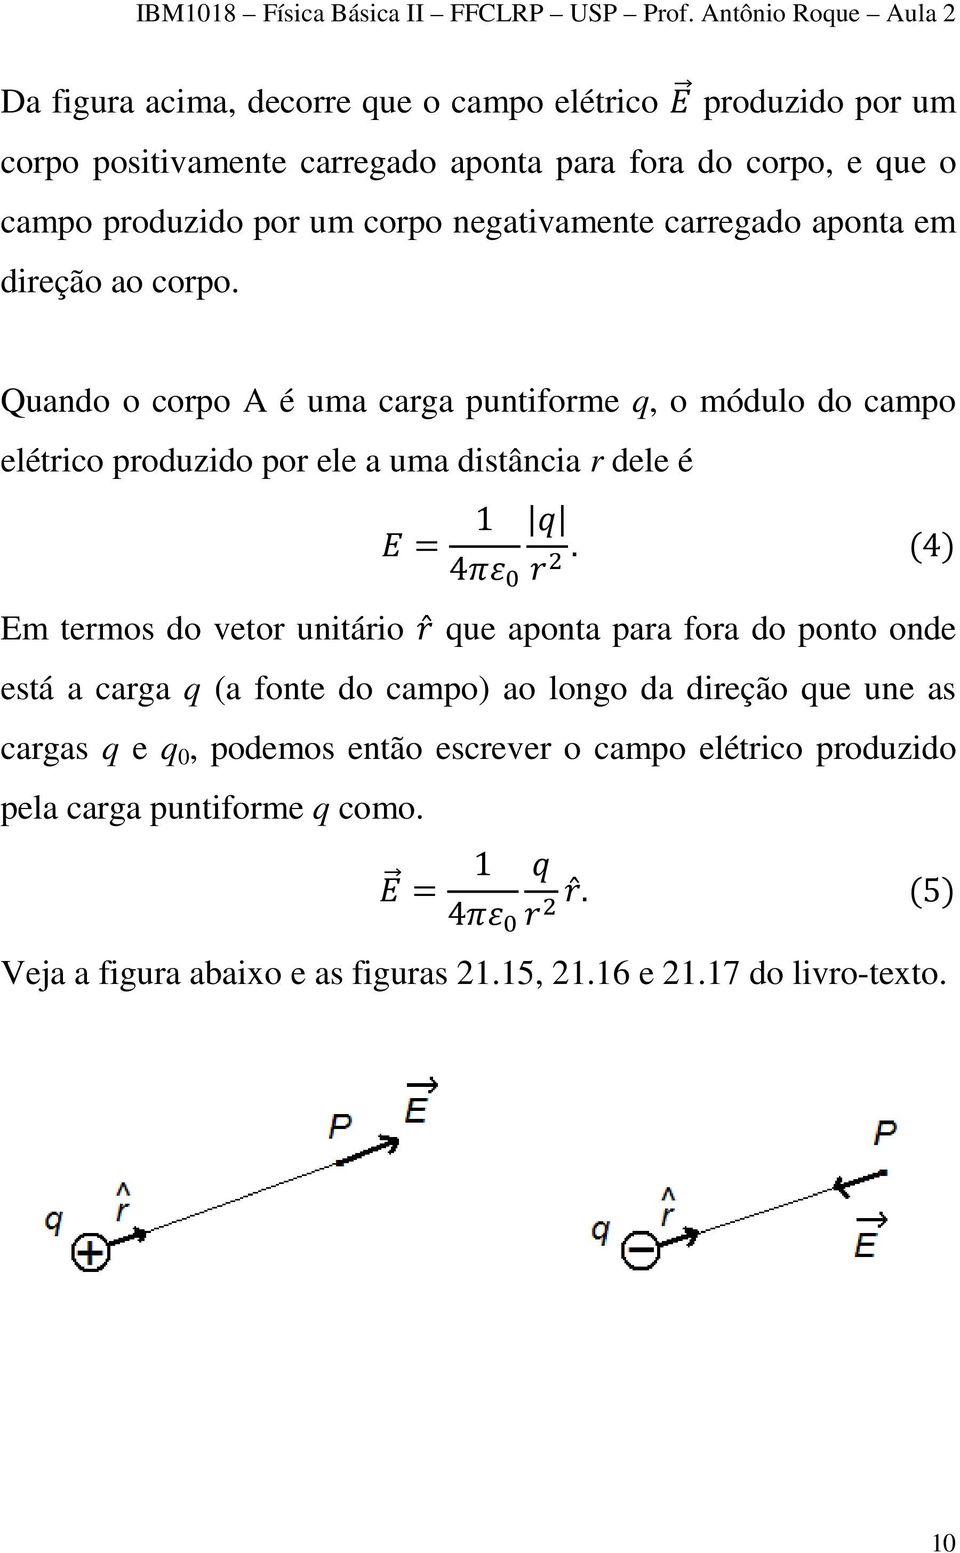 Quando o corpo A é uma carga puntiforme q, o módulo do campo elétrico produzido por ele a uma distância r dele é = 1 4.